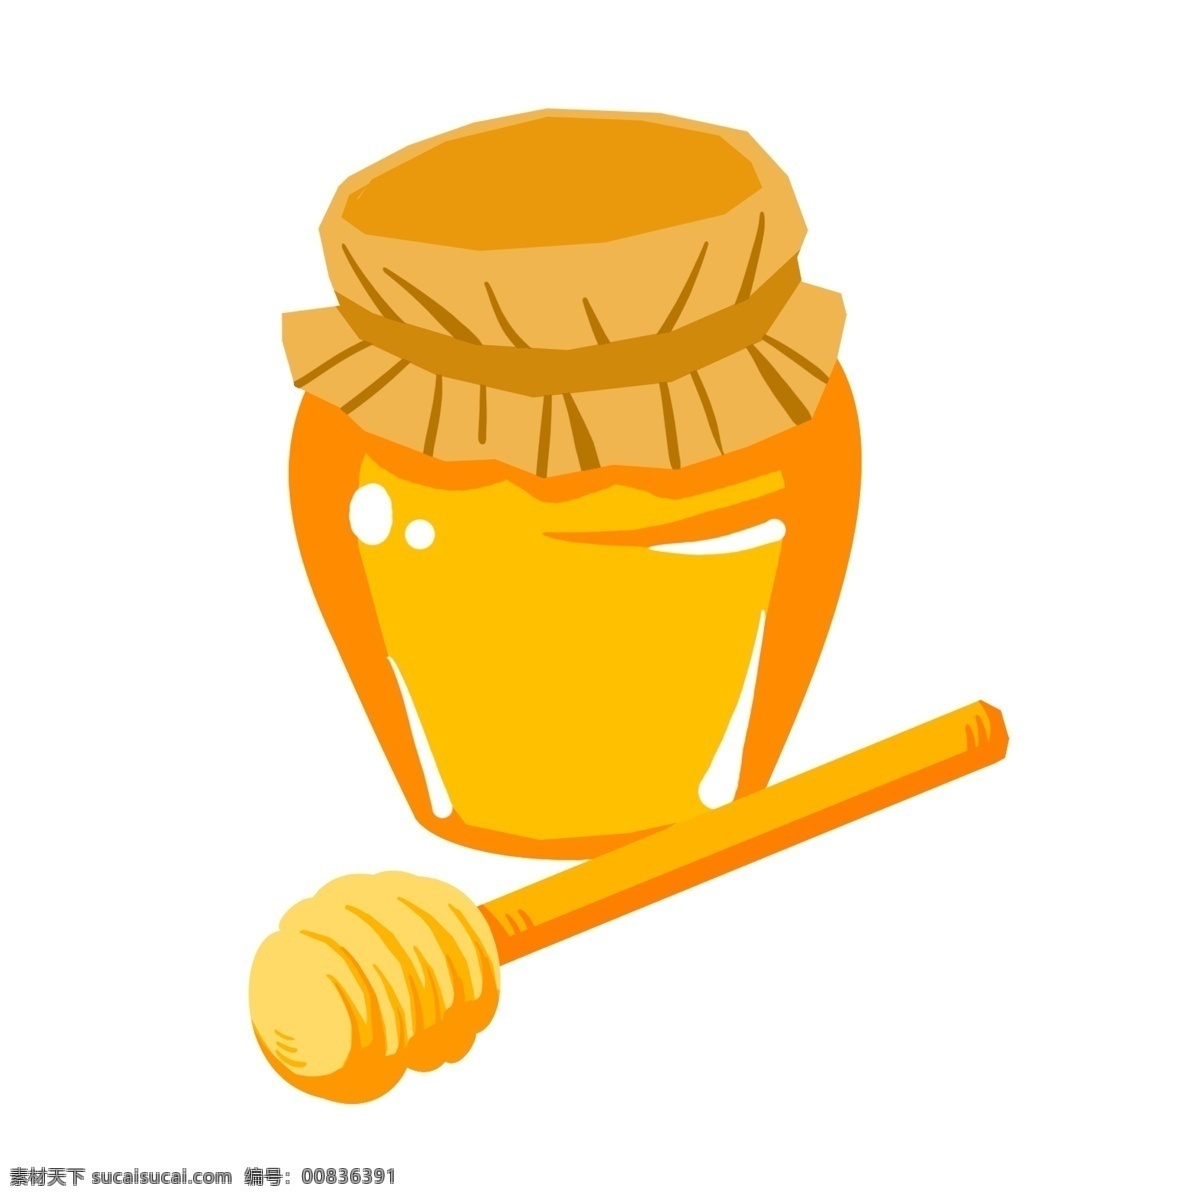 手绘 卡通 风格 蜂蜜 蜂蜜罐 罐子 黄色罐子 黄色蜂蜜 黄色勺子 卡通蜂蜜罐 合着的蜂蜜罐 蜂蜜罐小物 蜂蜜罐插图